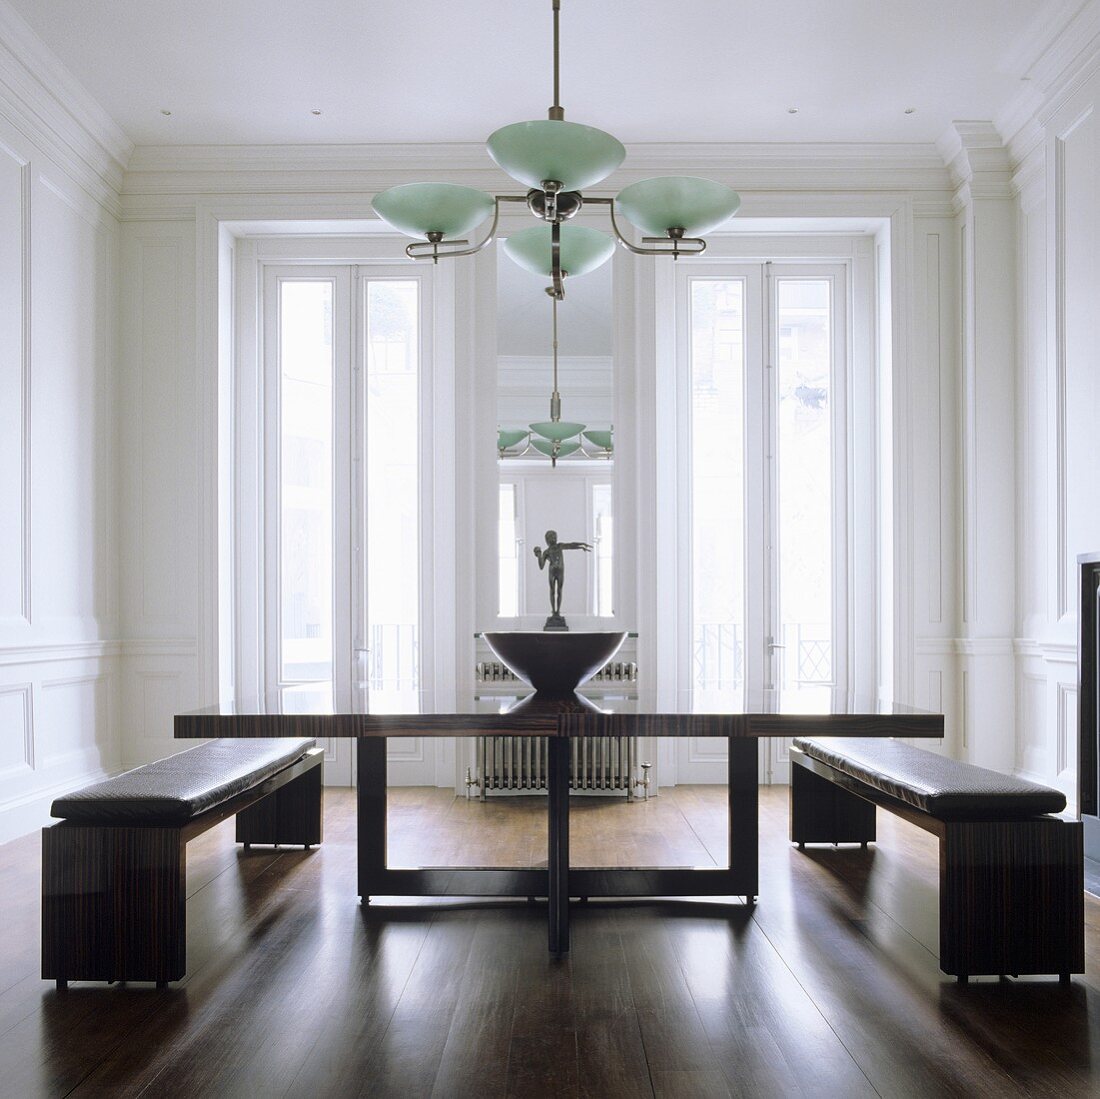 Esstisch mit Holzgestell und Bänke mit Lederpolster im eleganten Wohnraum mit Deckenlampe im Art Deko Stil